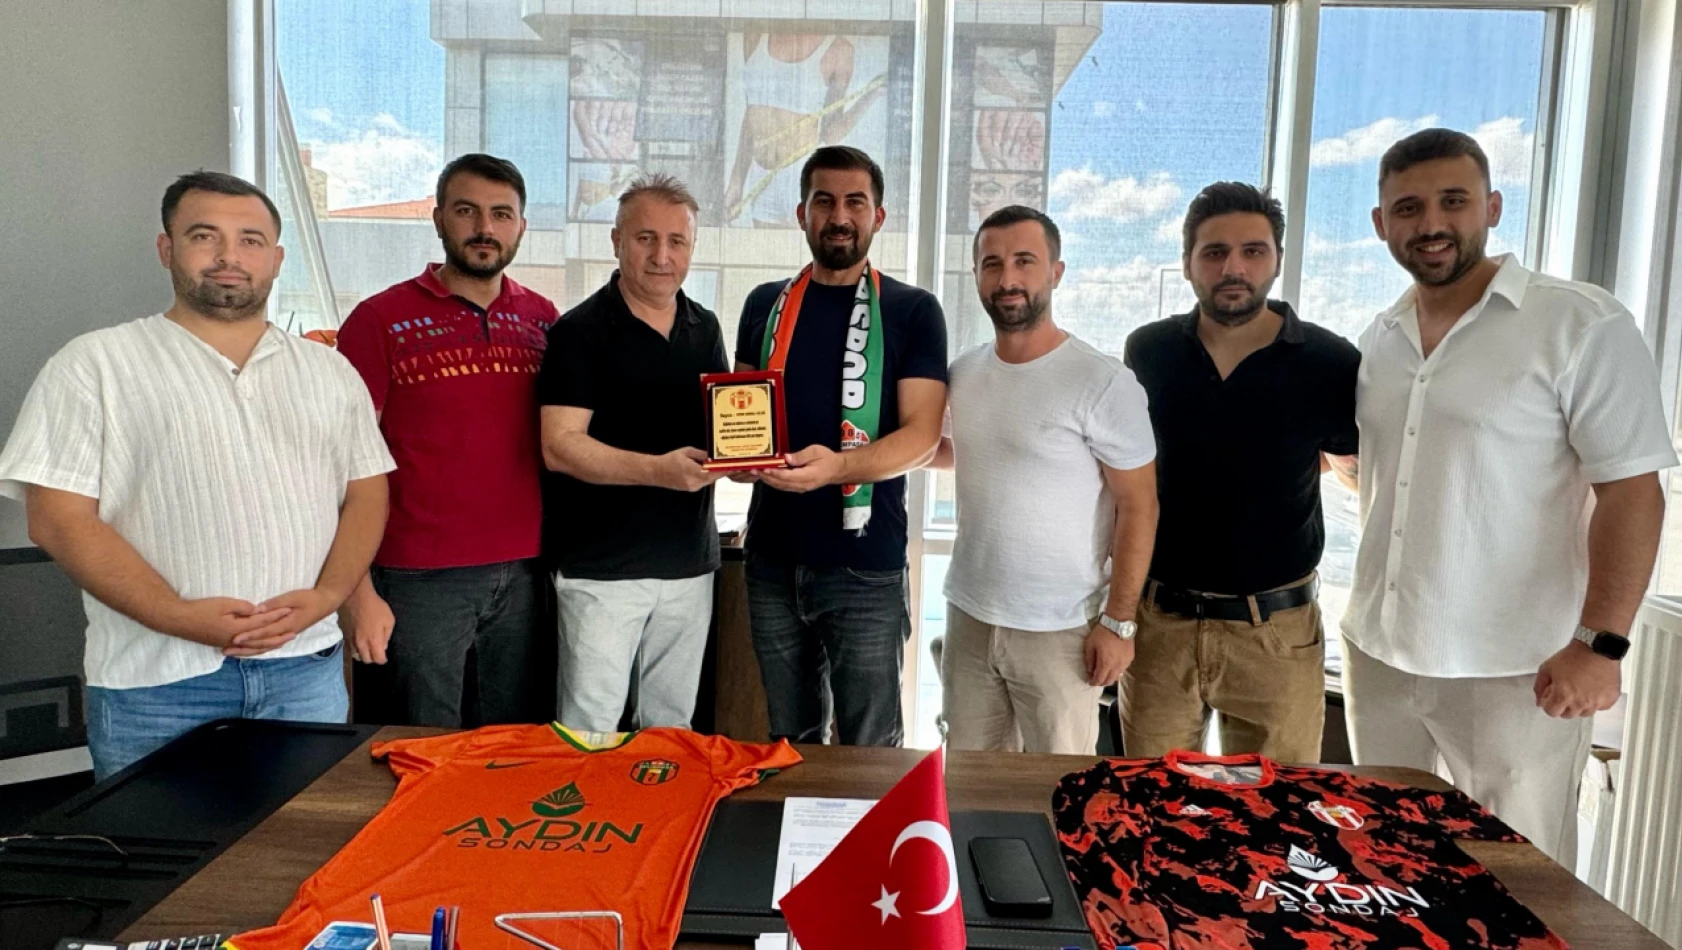 Selimpaşaspor ve Aydın Sondaj sponsorluk anlaşması imzaladı